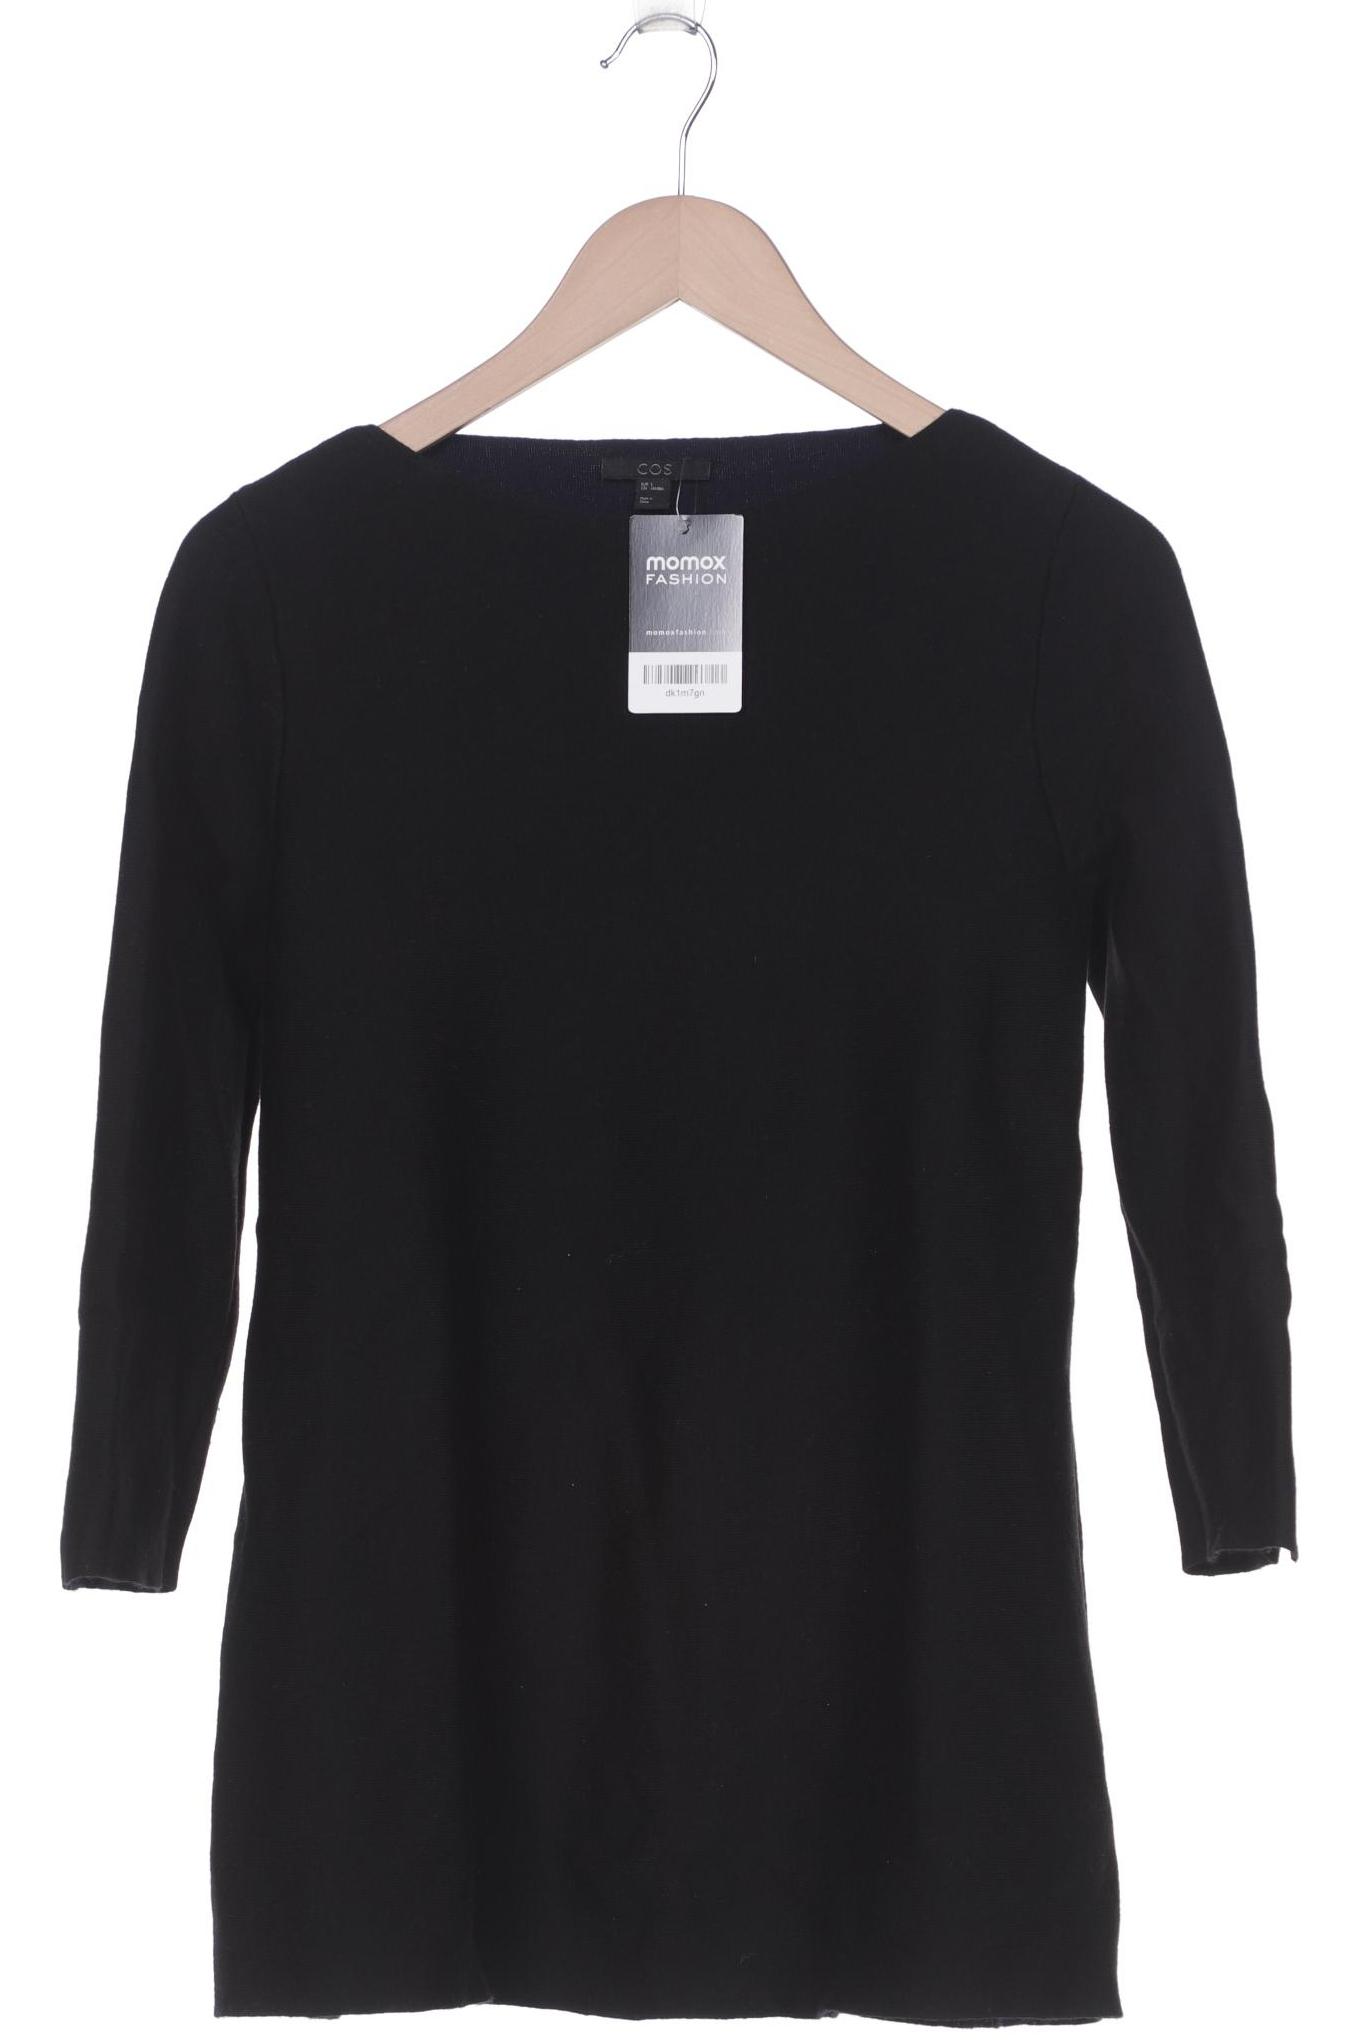 COS Damen Pullover, schwarz, Gr. 36 von COS